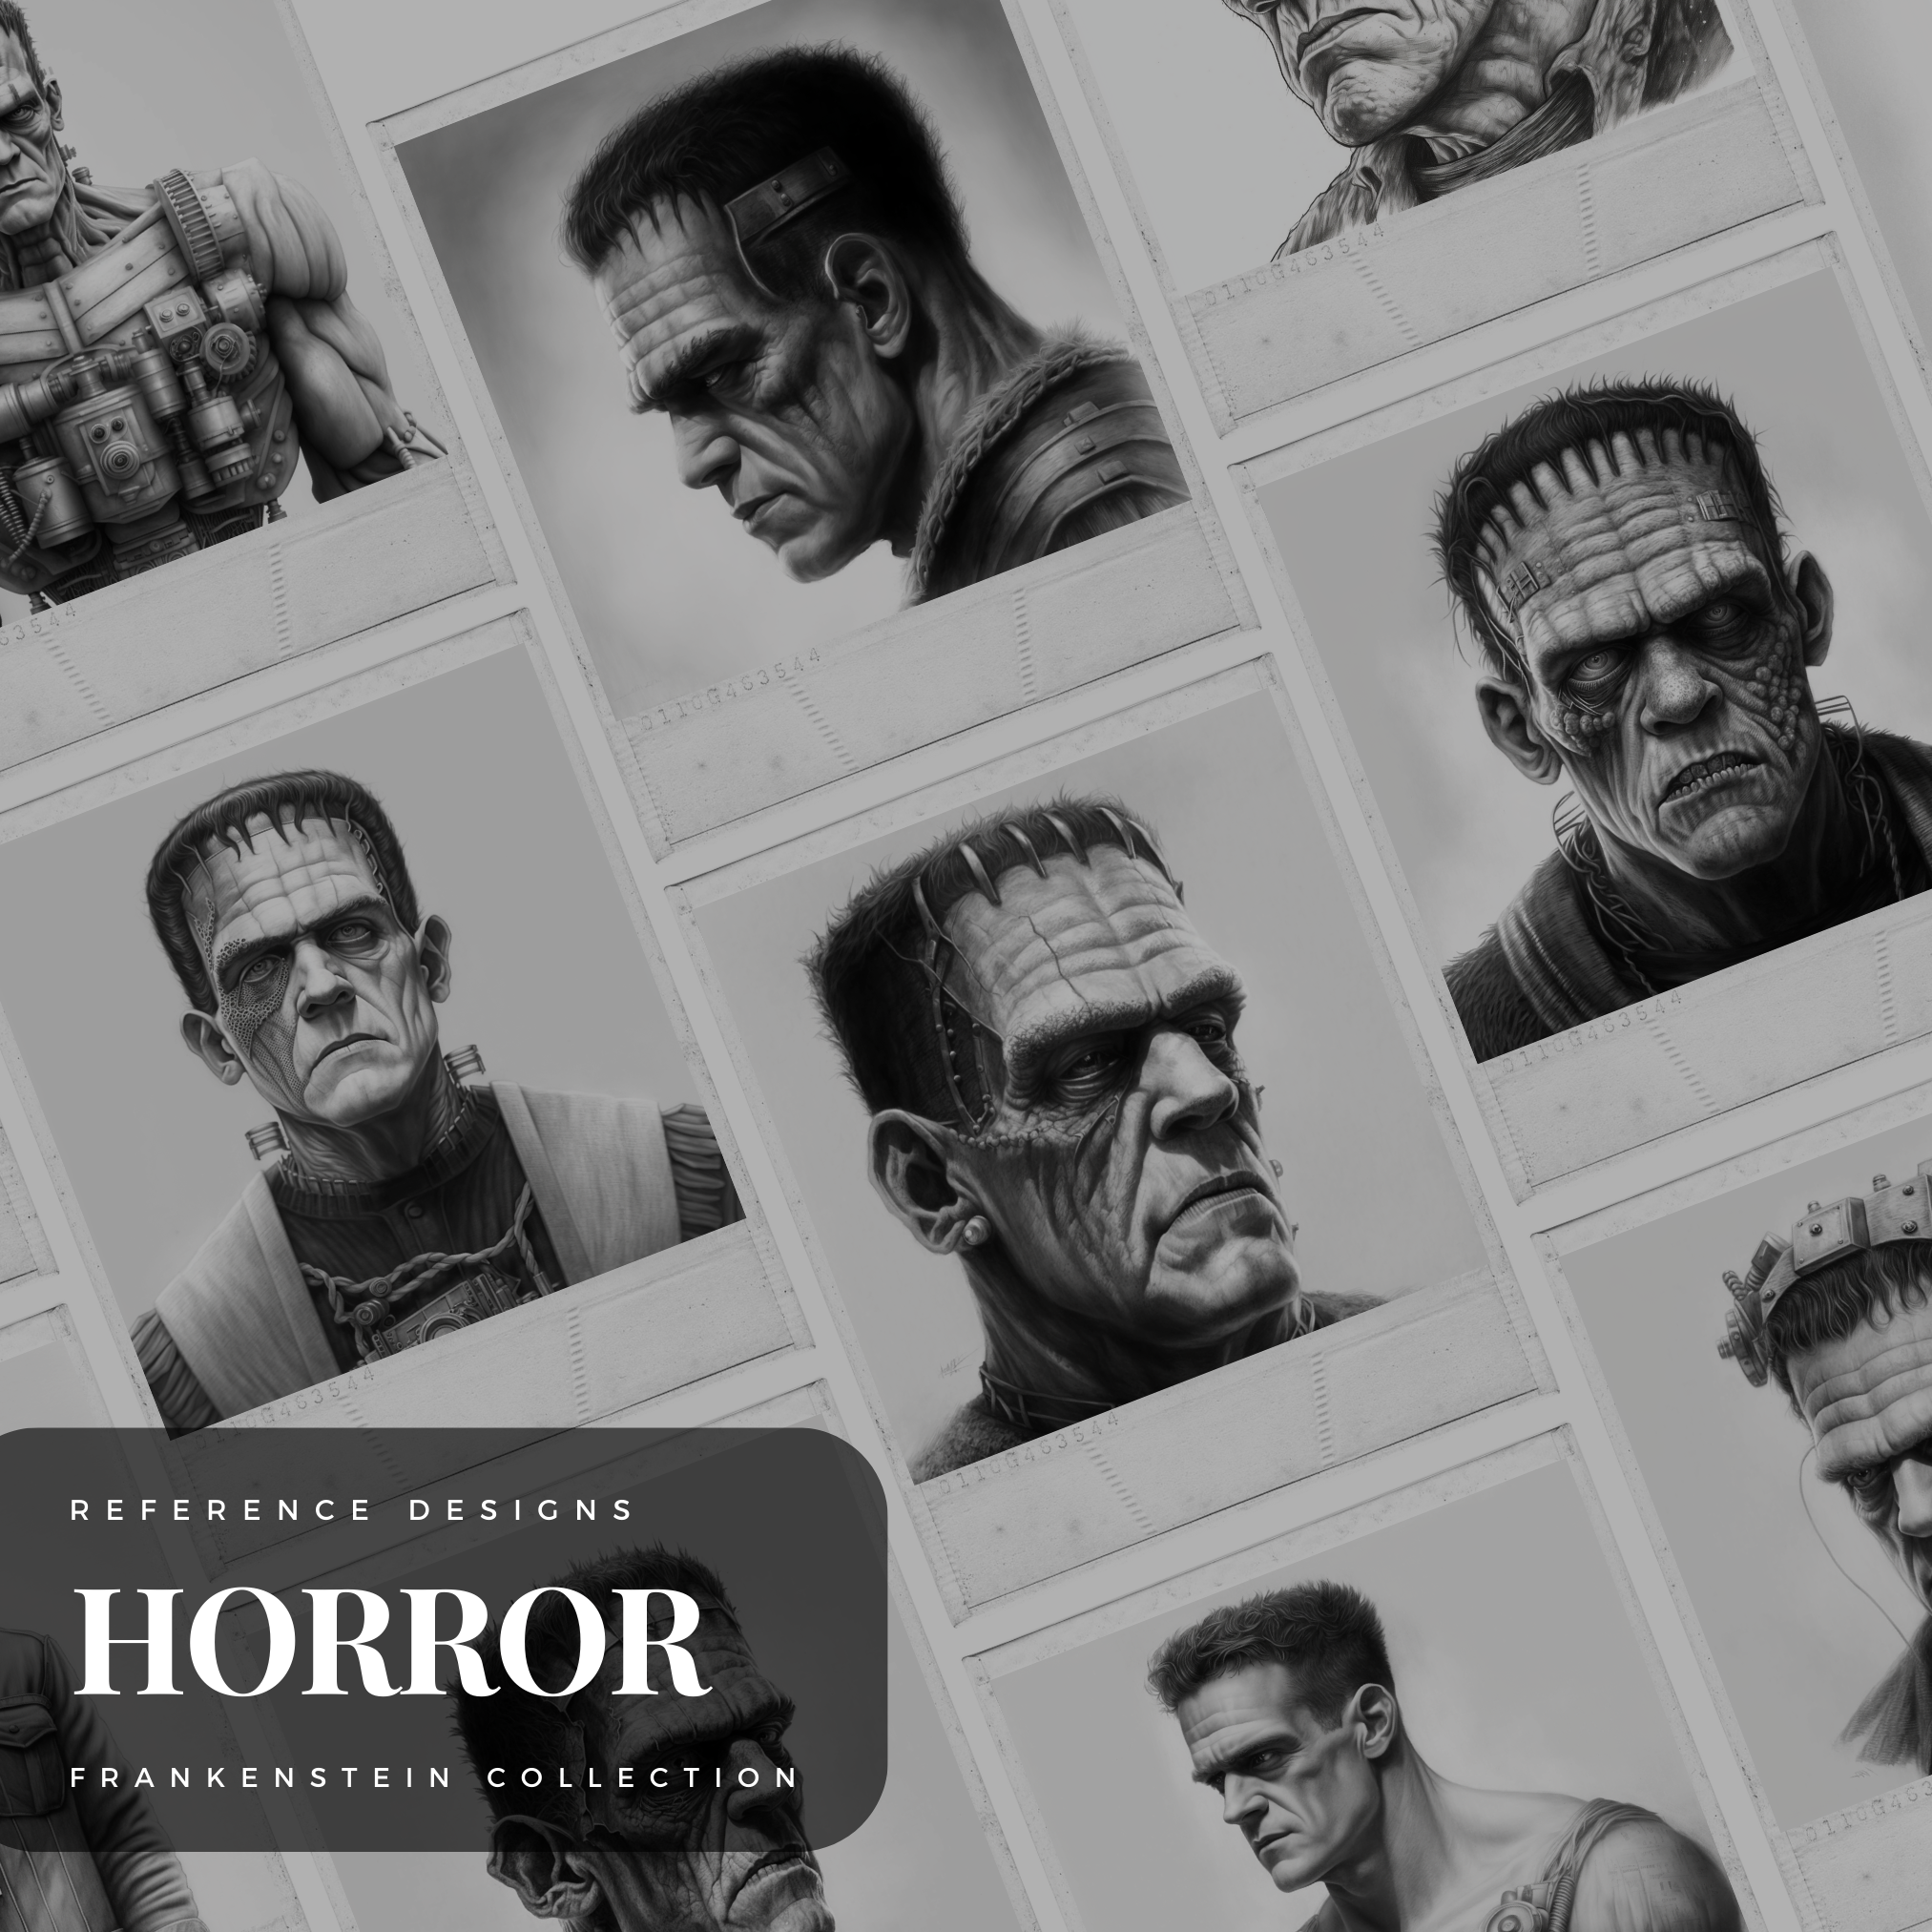 Digitale Horror-Designsammlung des Frankenstein-Monsters: 50 Procreate- und Skizzenbuchbilder